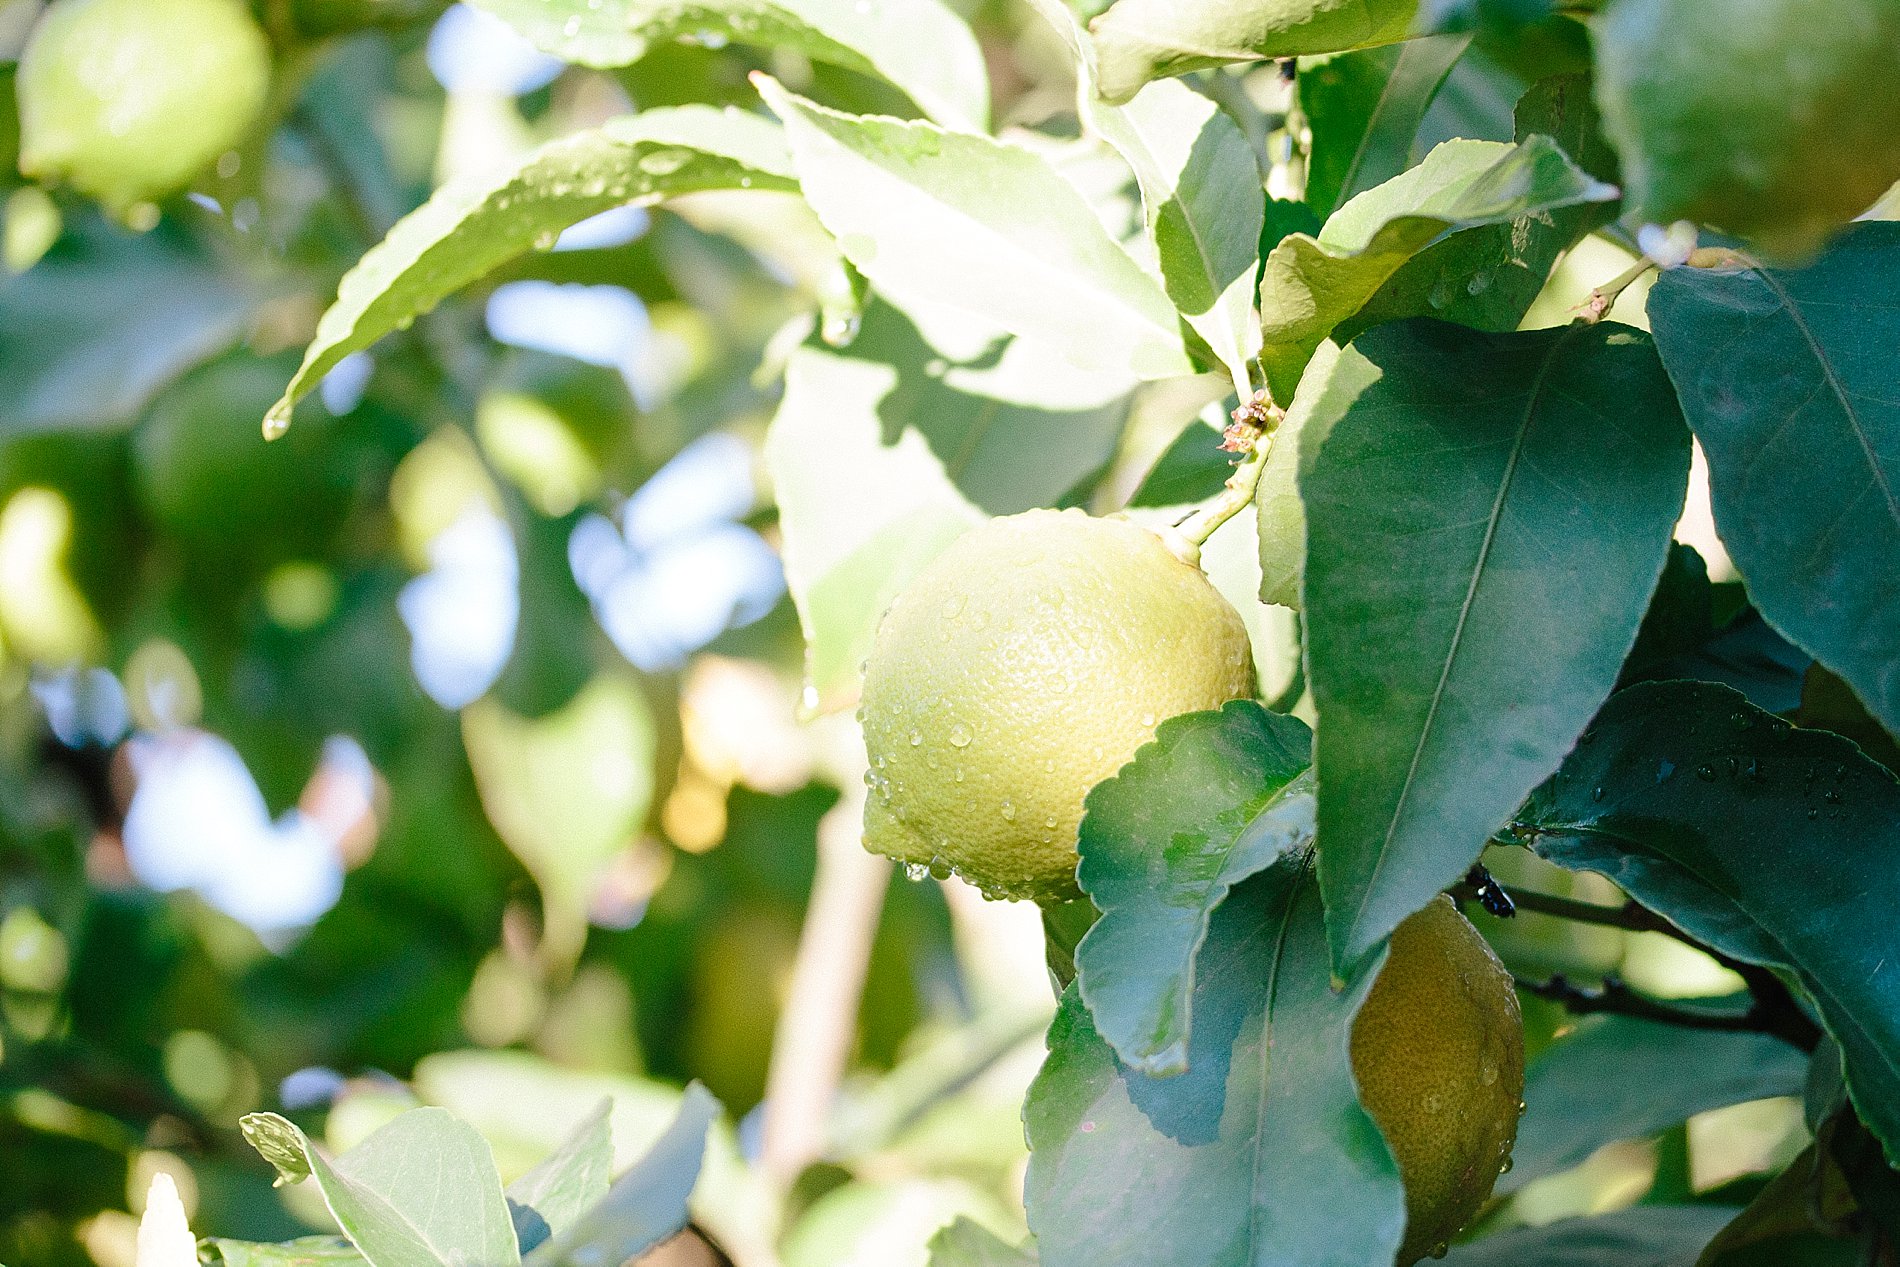 How to prune a lemon tree_0004